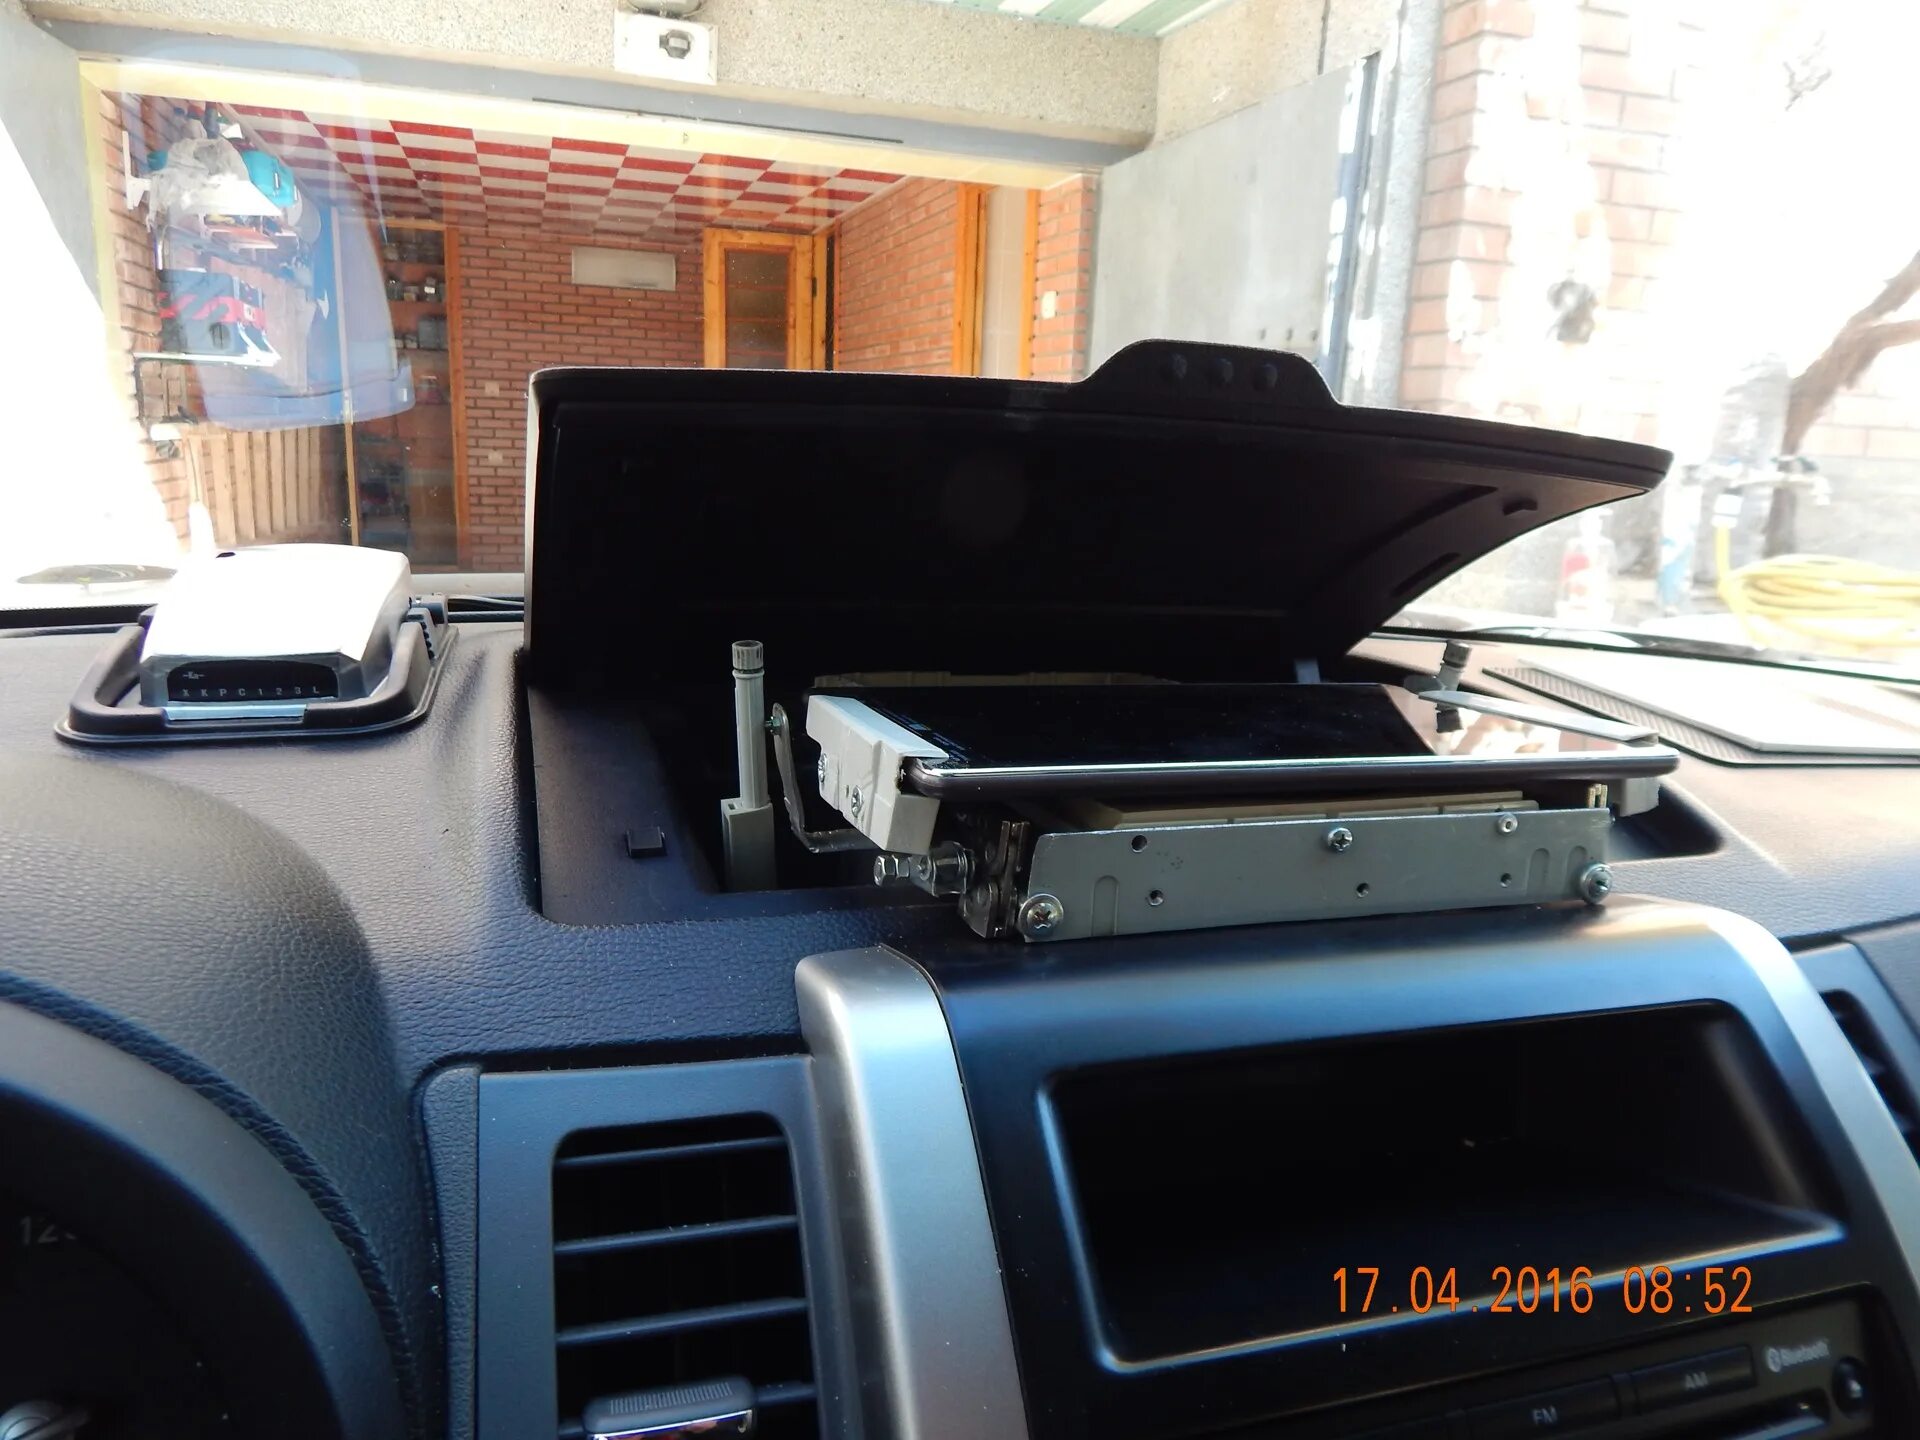 Выдвижной монитор Audi привод. Выдвижной экран Avensis Drive. Выдвижной монитор Impreza GD. Выдвижной монитор в авто Challenger Ch-2100. Выдвижной экран в машину